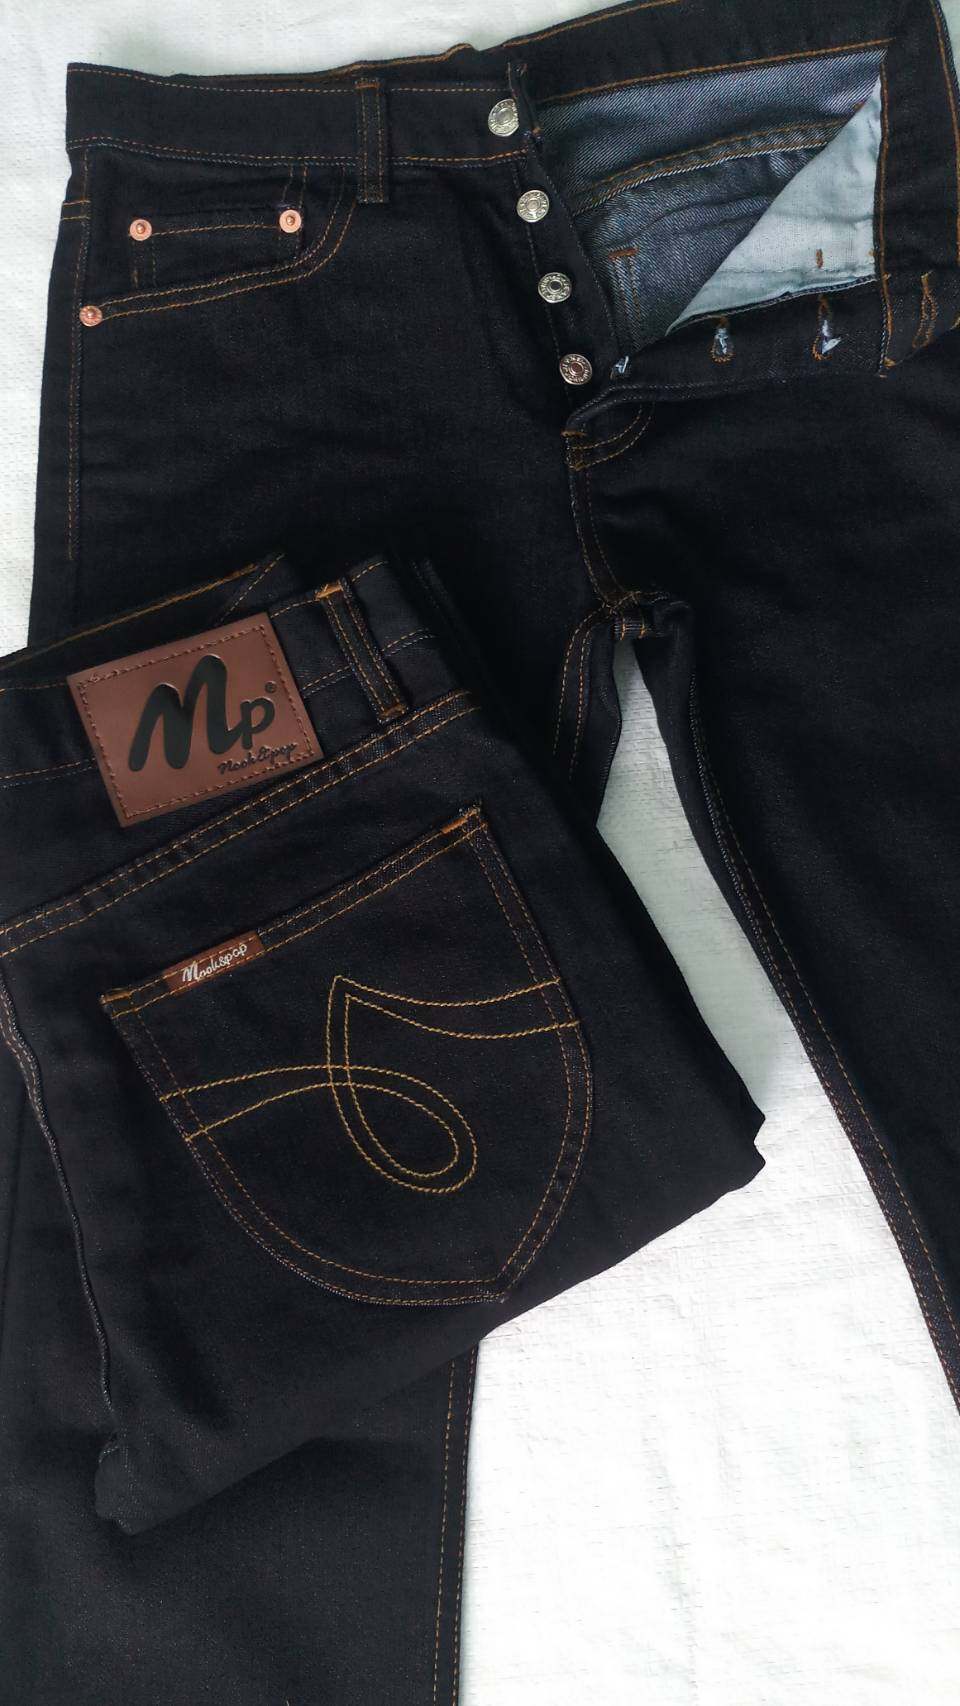 กางเกงยีนส์ชาย กางเกงยีนส์ผู้ชาย กางเกงยีนส์ขายาว มีไซร์ให้เลือก 28 -44 กางเกงยีนส์ผ้าฟอกนิ่มผ้าล้างน้ำทรงขากระบอก กางเกงยีนส์แฟชั่น